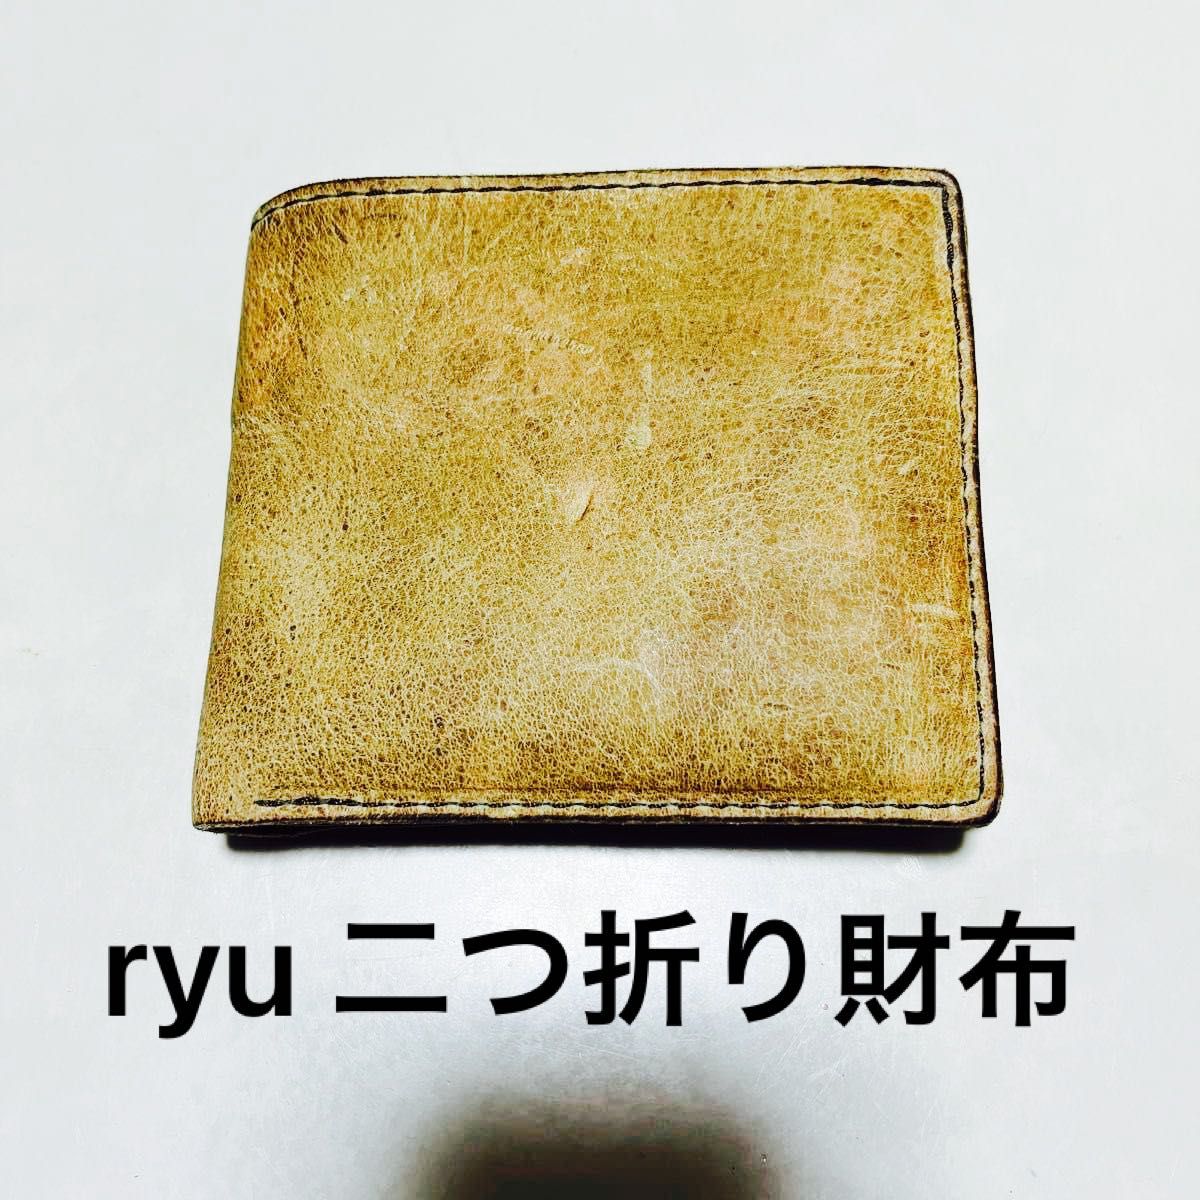 ryu 二つ折り財布 2つ折り財布 革製 本革 ハンドメイド Yahoo!フリマ